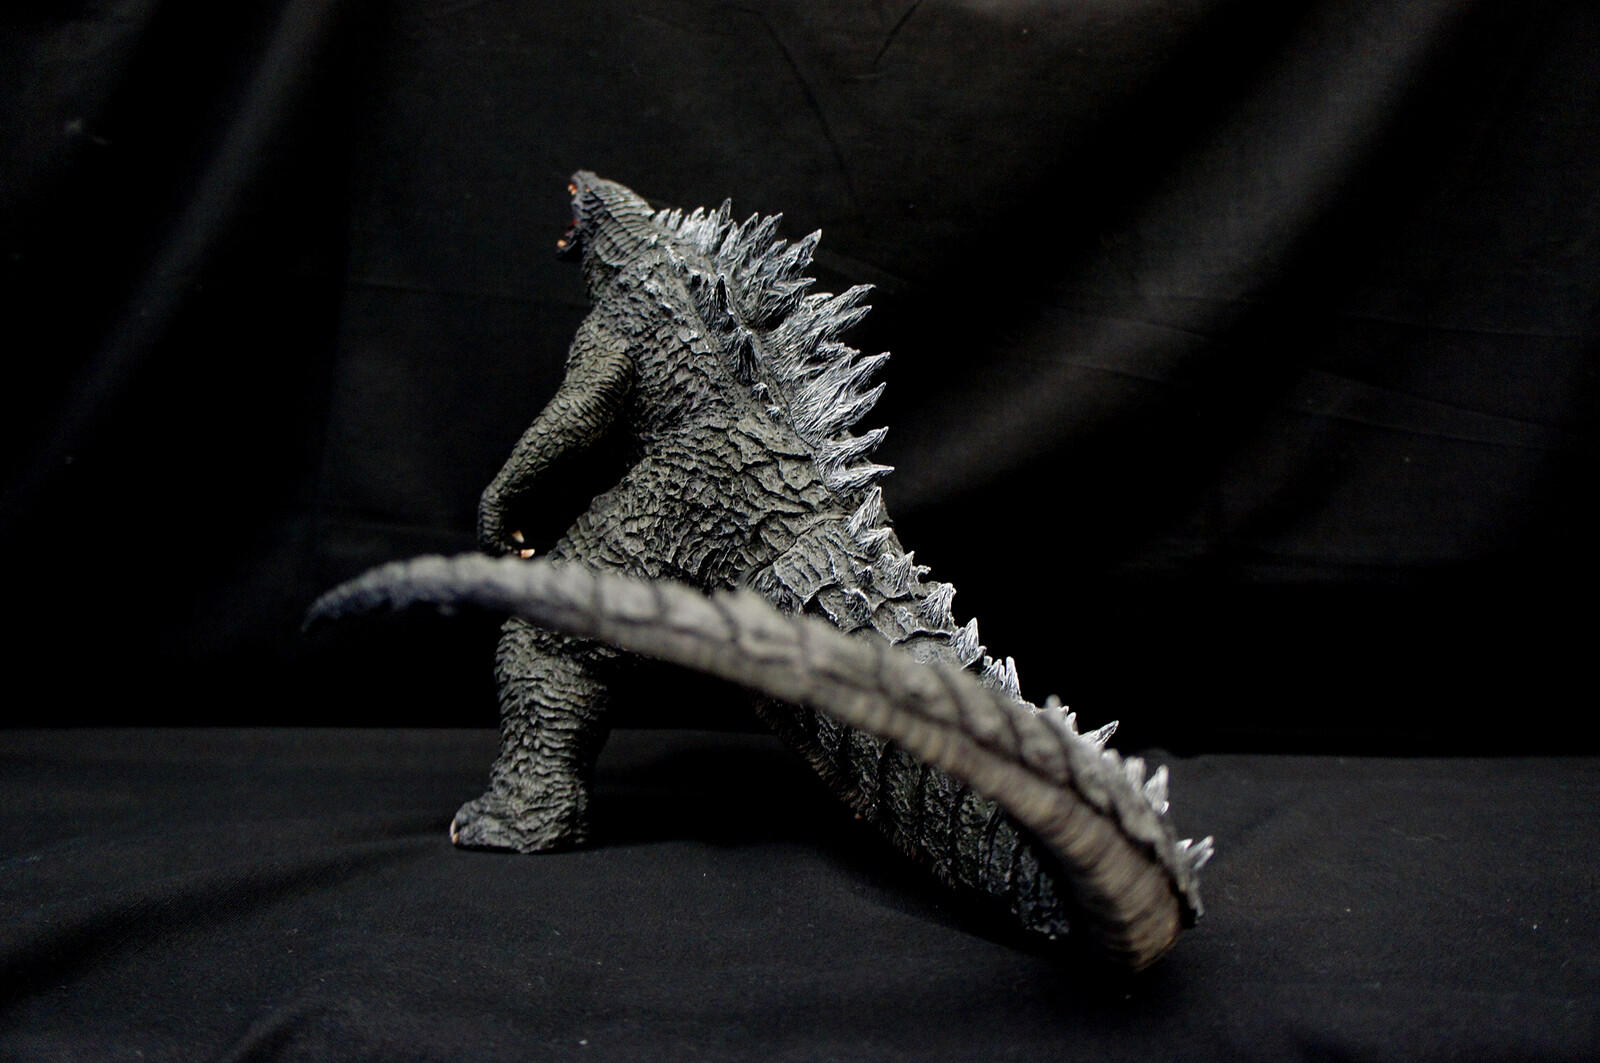 2014 Godzilla 30 cm Art Statue
https://www.solidart.club/